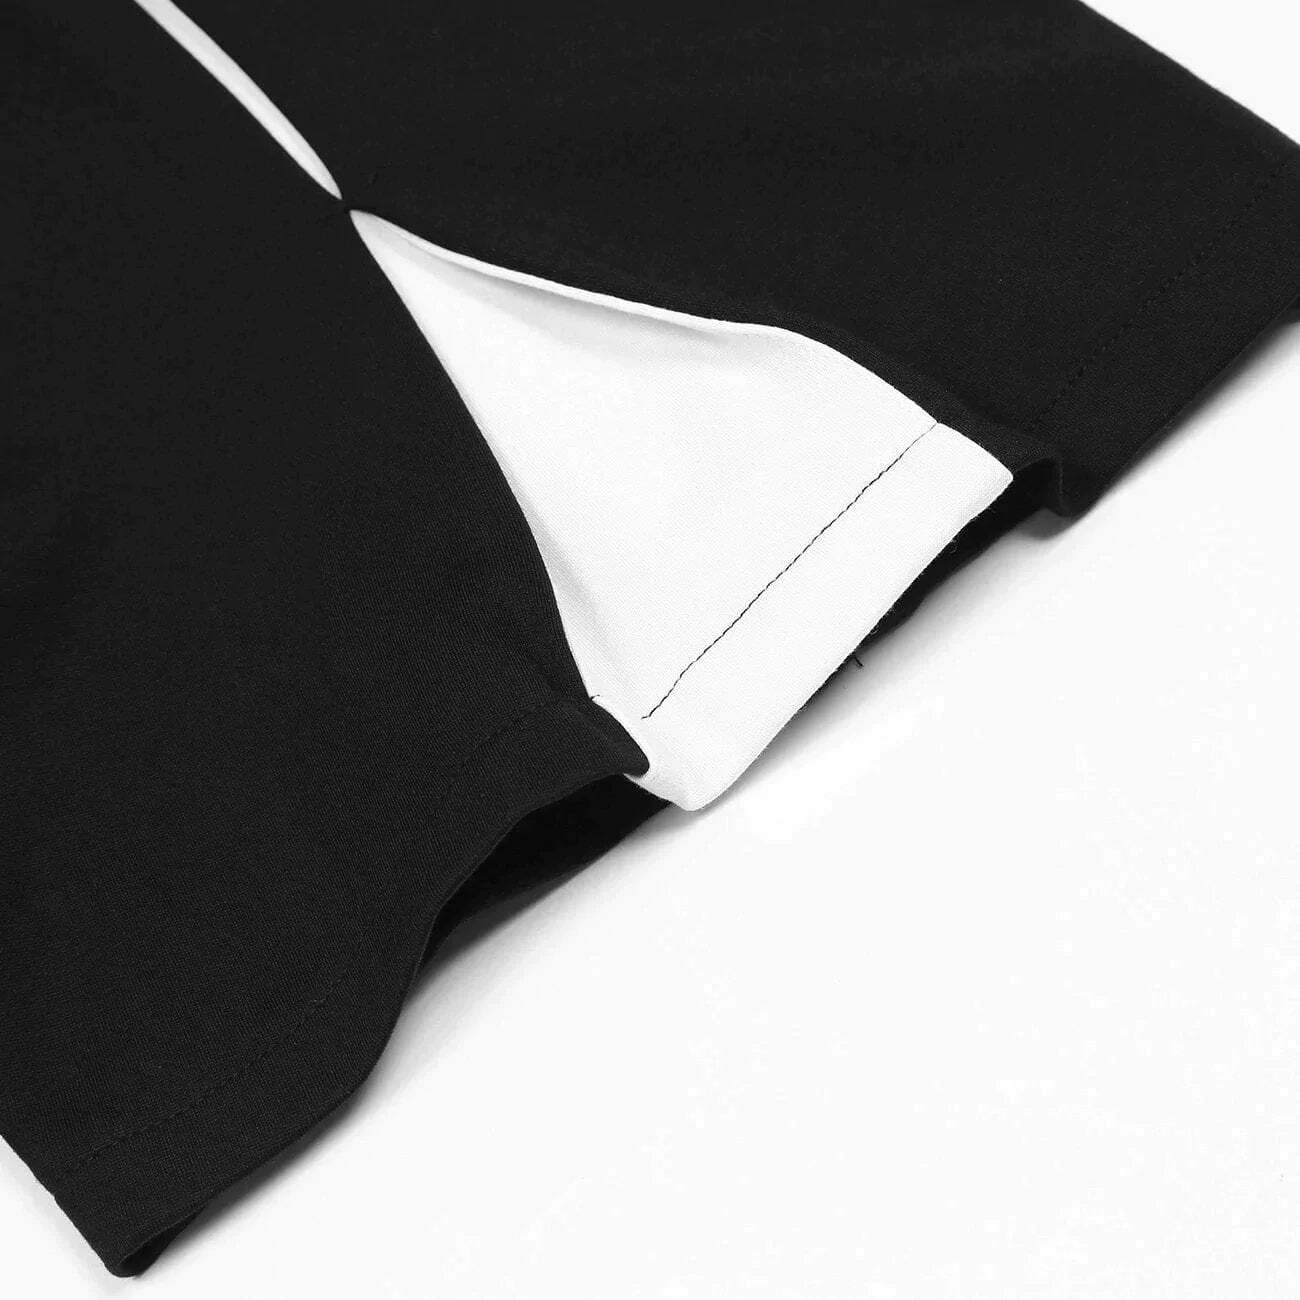 stitchdetail split design shorts urban chic statement 4692